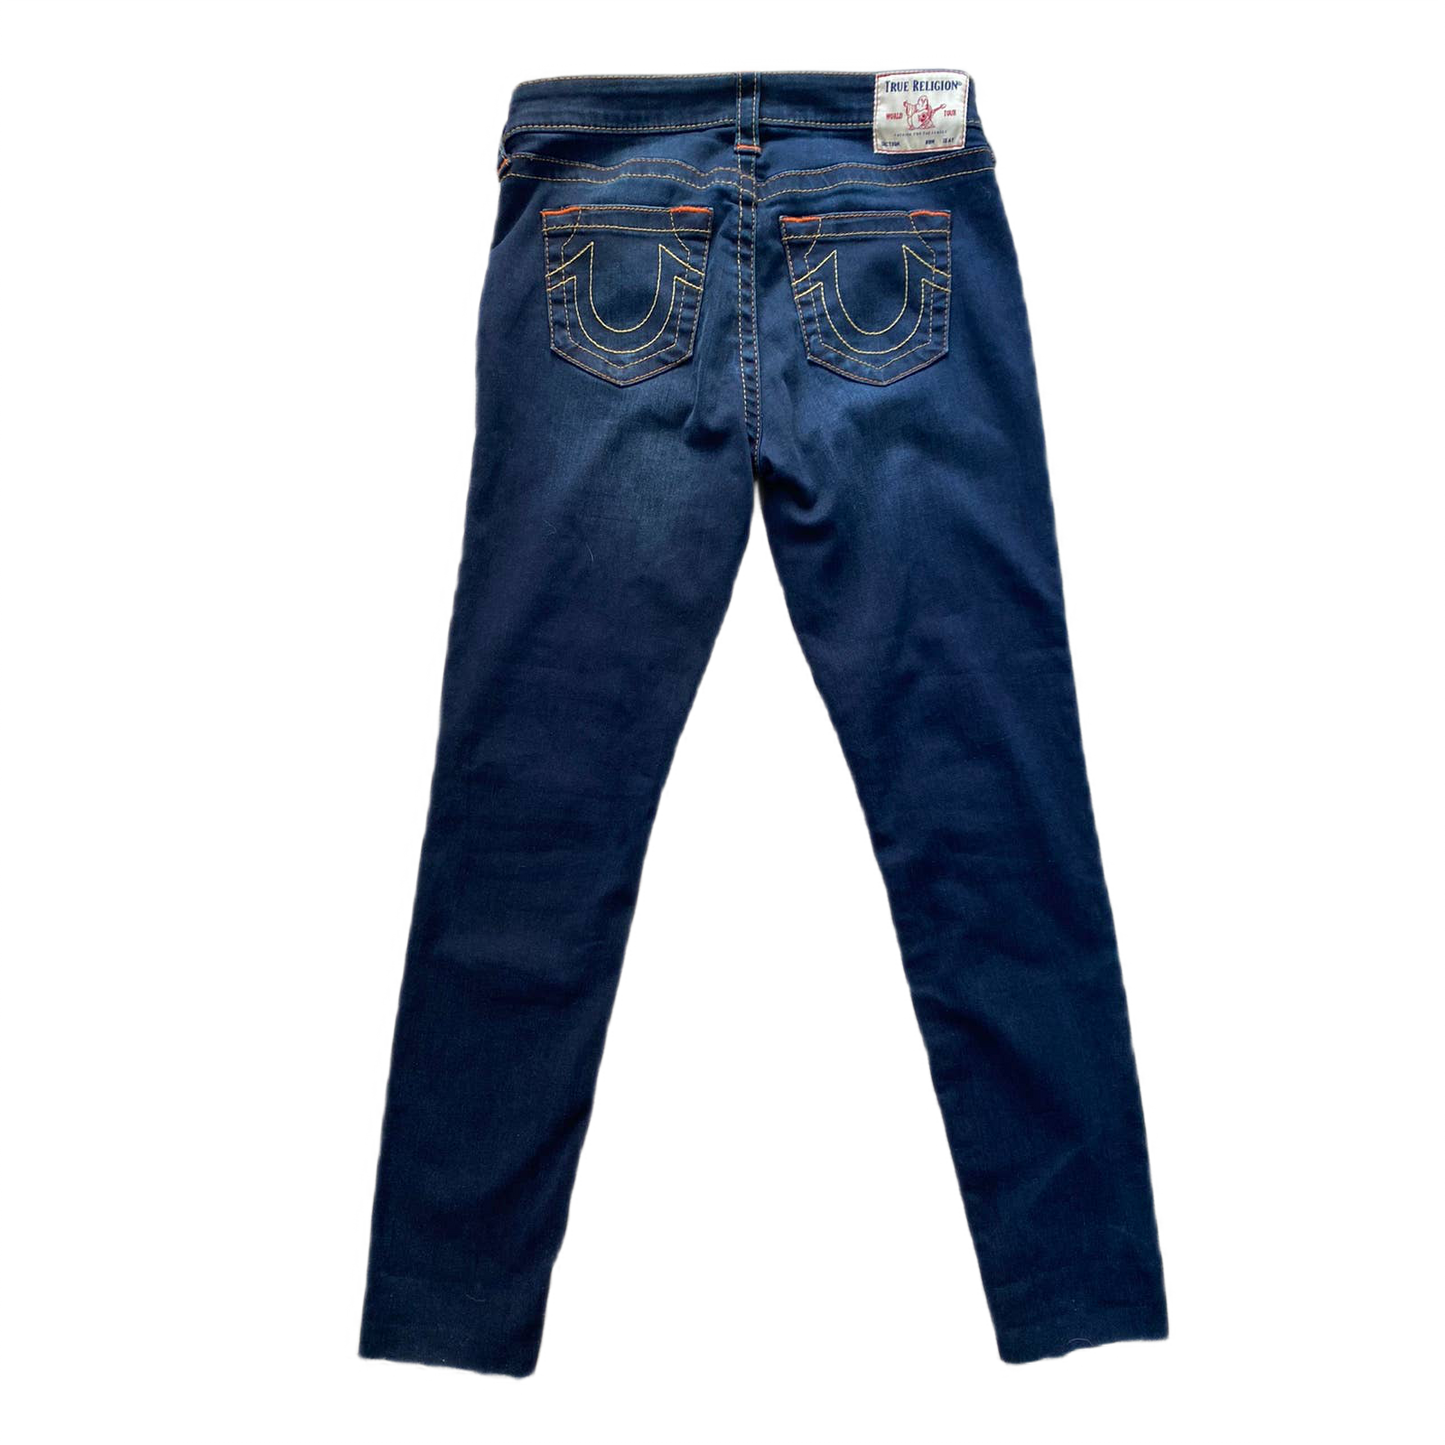 True Religion vintage navy jeans orange stitching